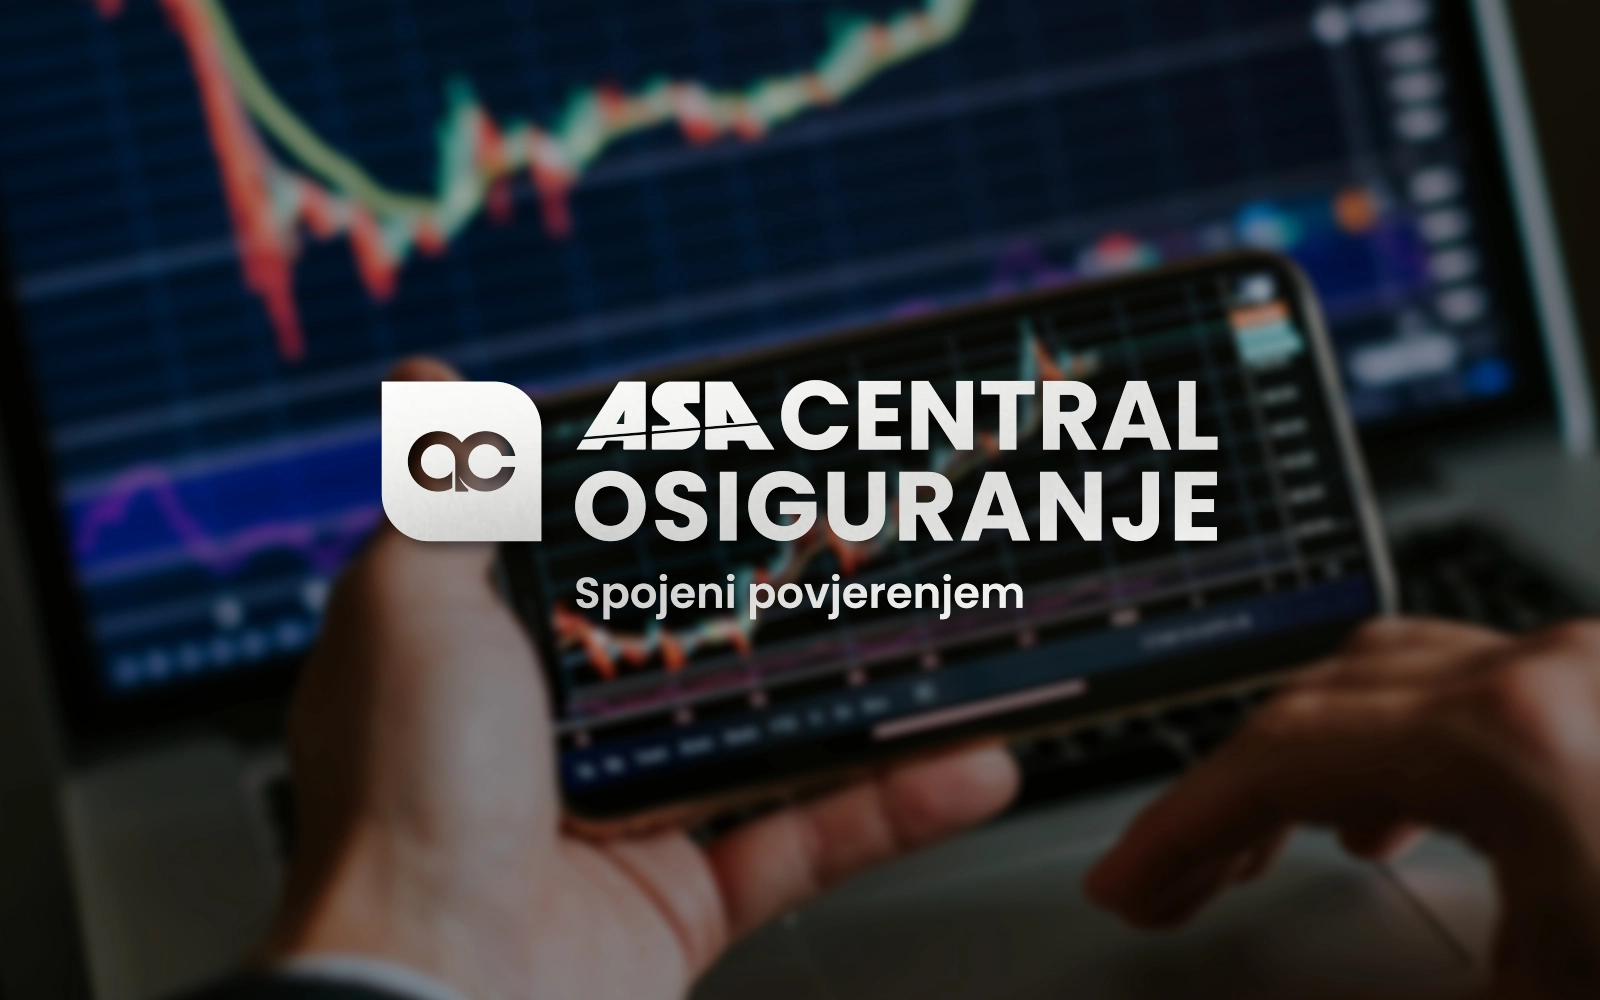 ASA Central osiguranje postalo najveće osiguravajuće društvo u BiH